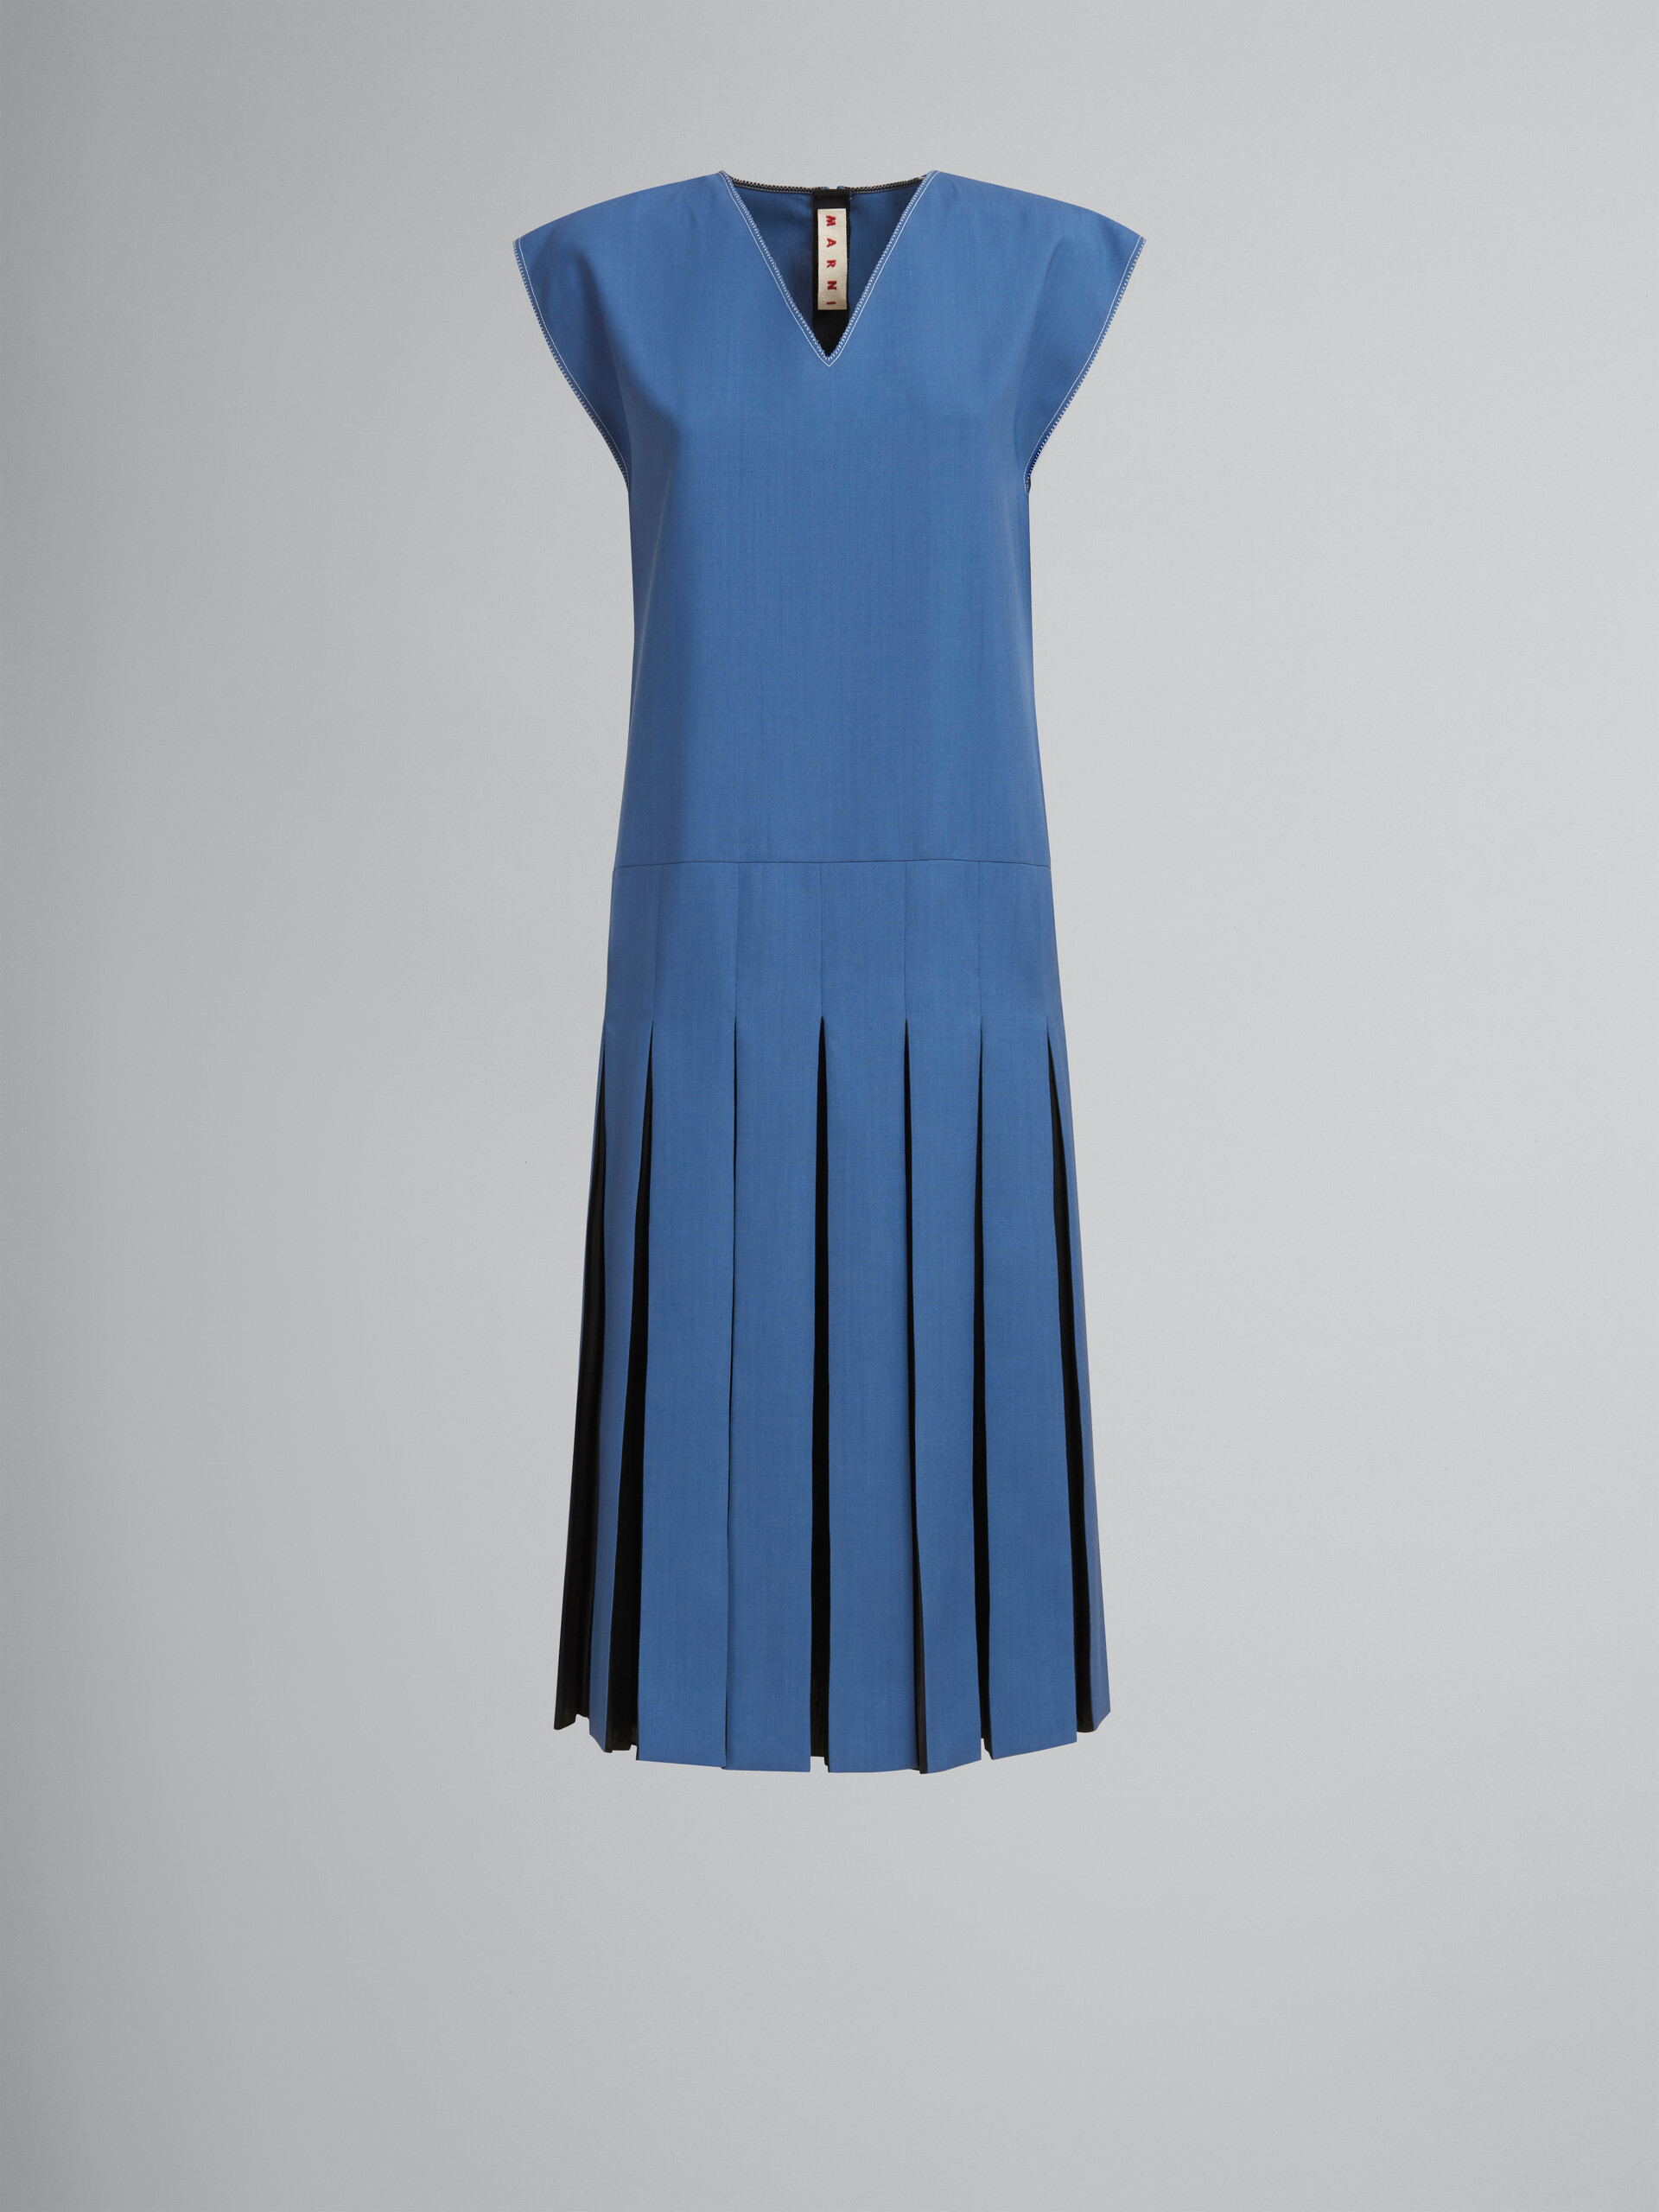 ブルー トロピカルウール製ドレス、コントラストプリーツ - ドレス - Image 1